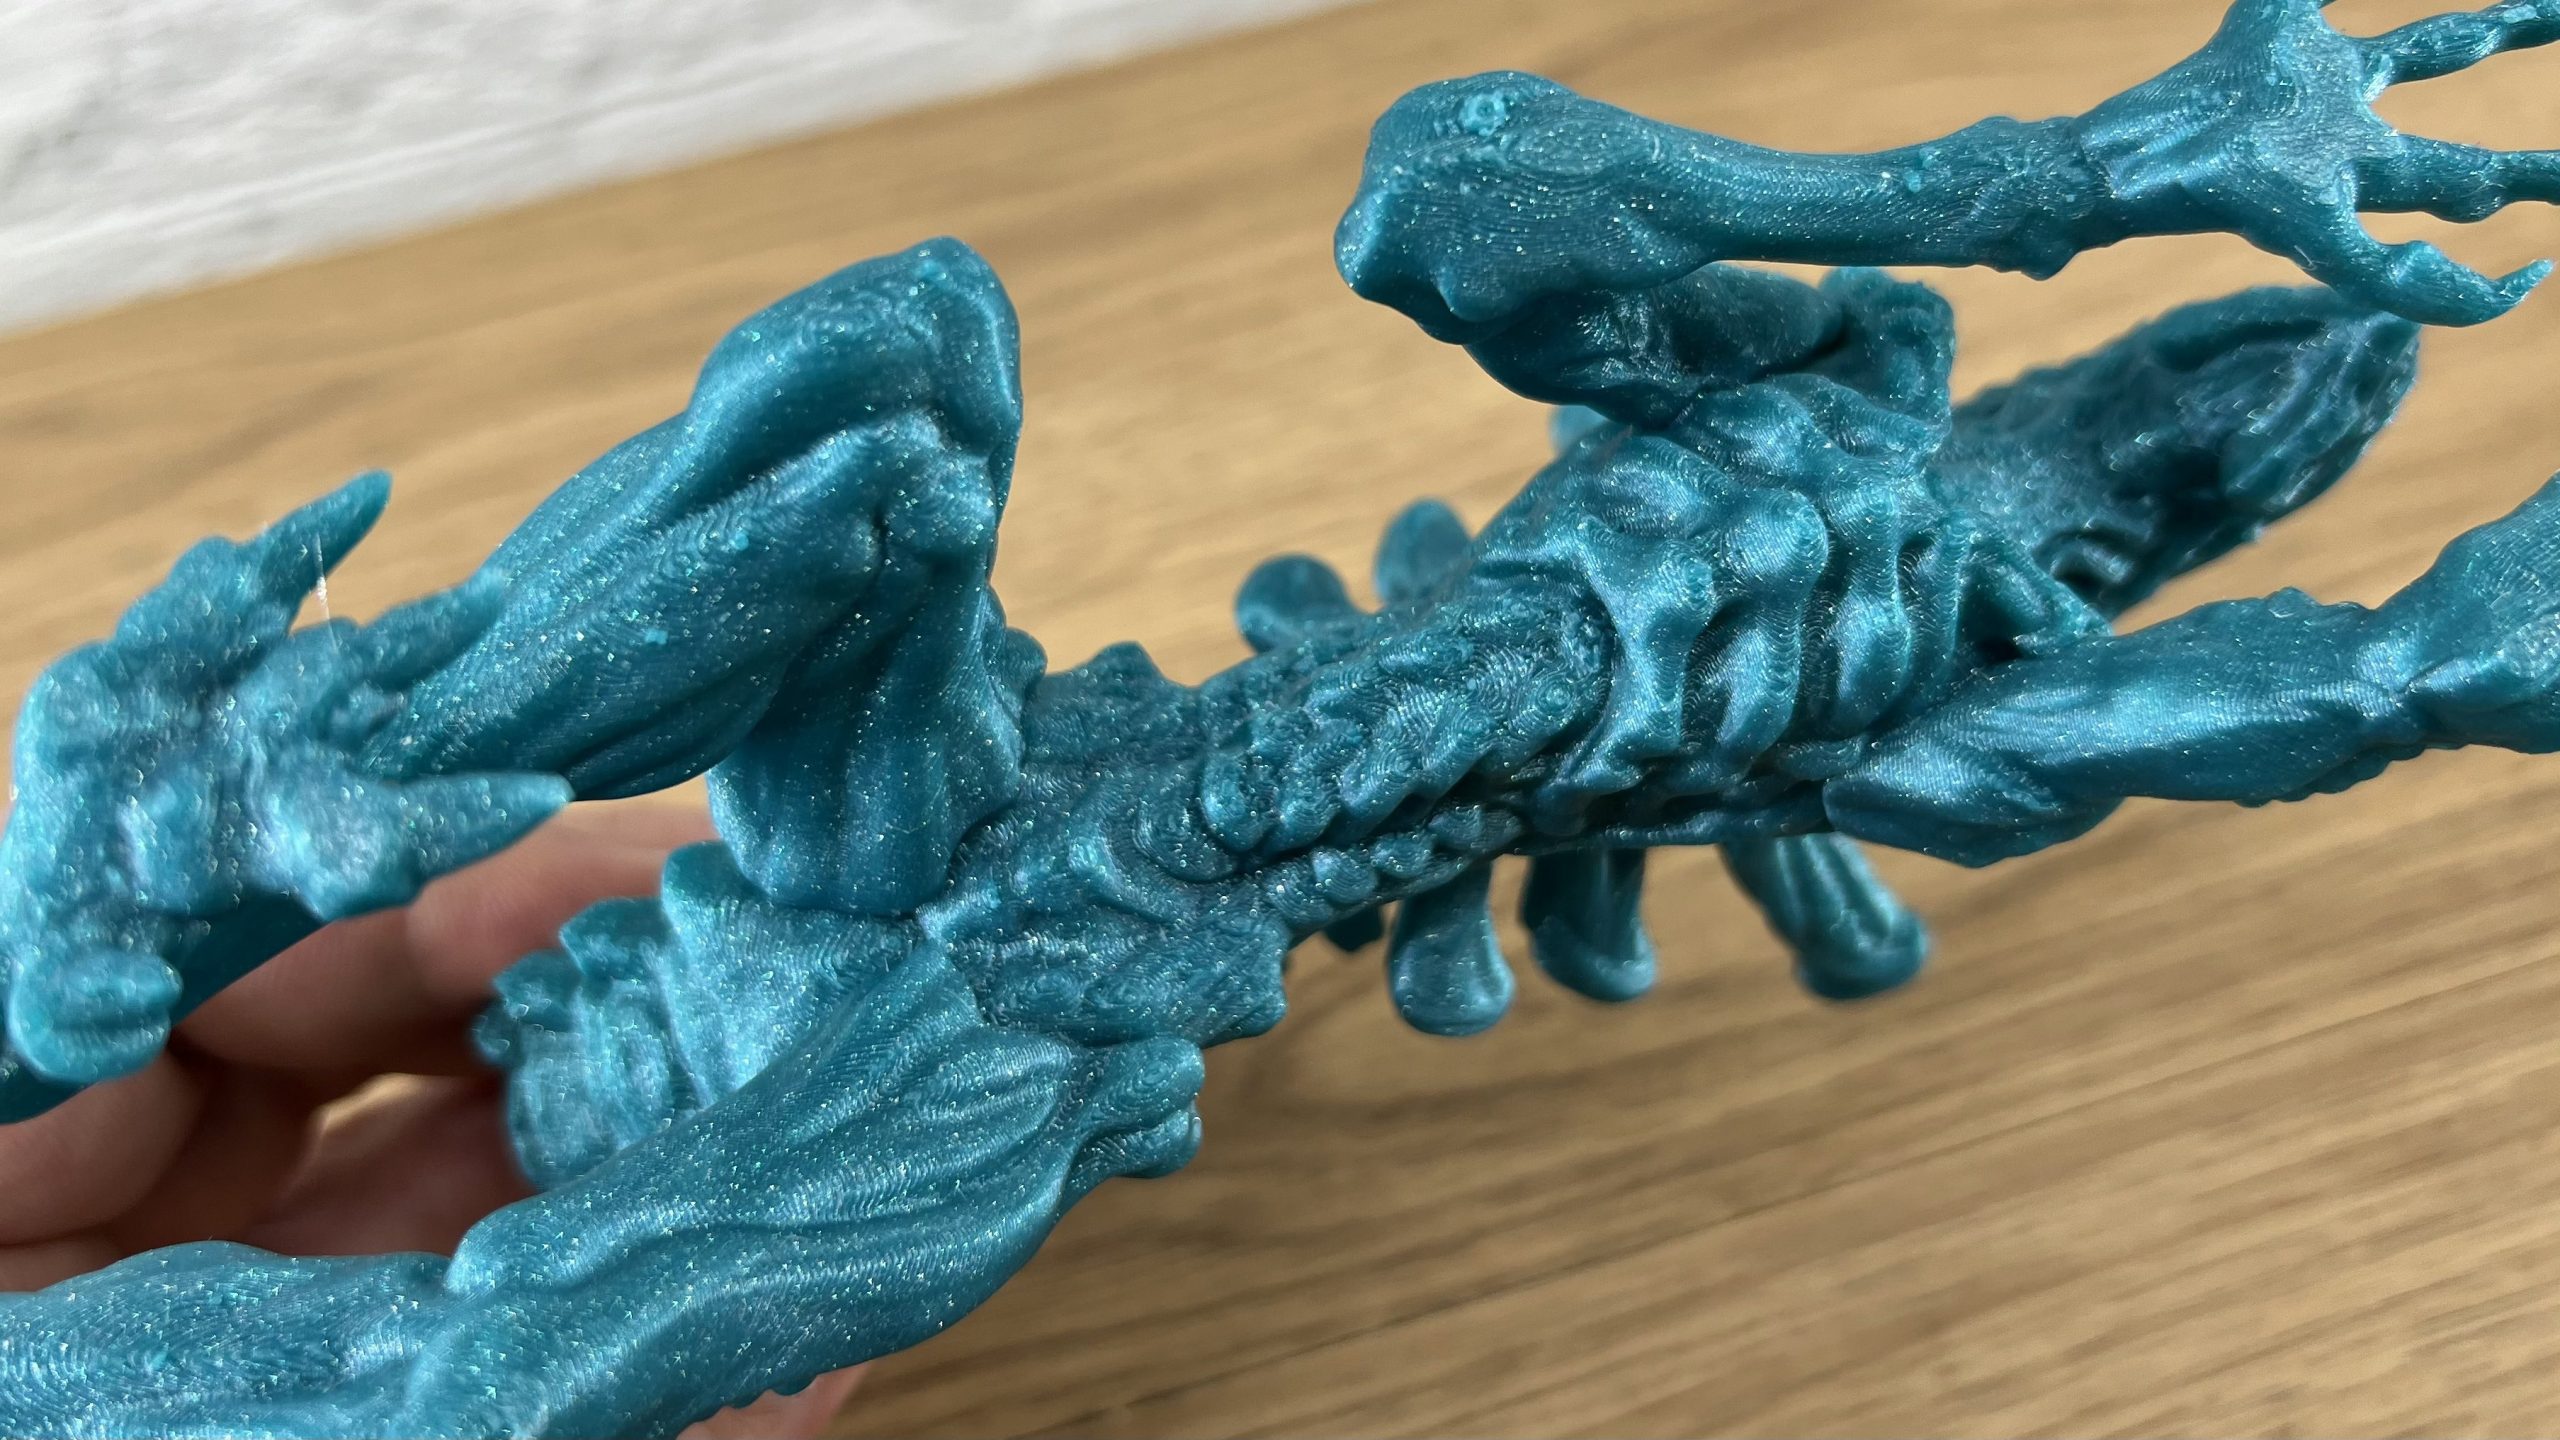 Lissage - Rendez les surfaces supérieures super lisses avec PrusaSlicer 2.3  (RC) - Original Prusa 3D Printers